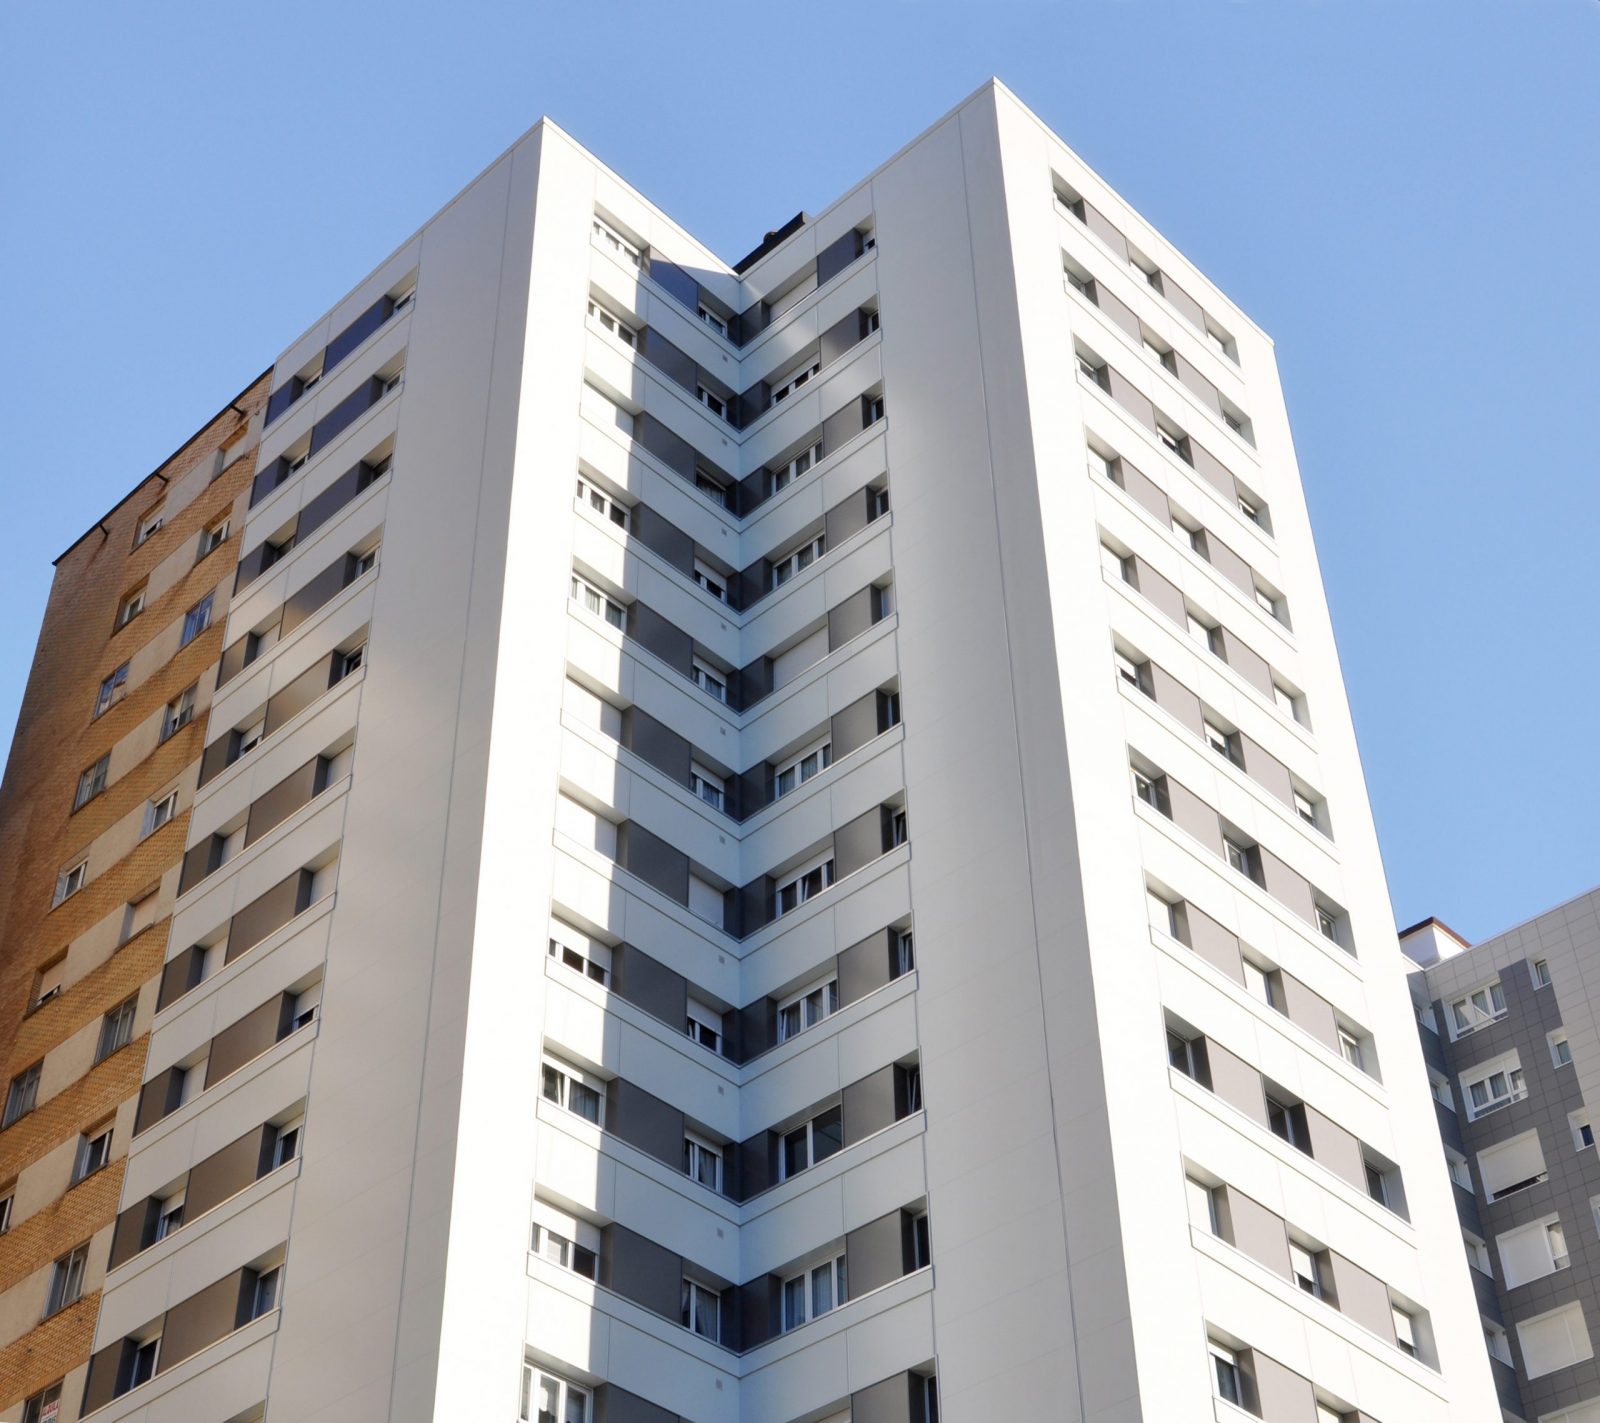 forma No puedo sanar Lastres 12 - Gijon - Rehabilitación de fachadas y edificios en Asturias |  GarcíaRama